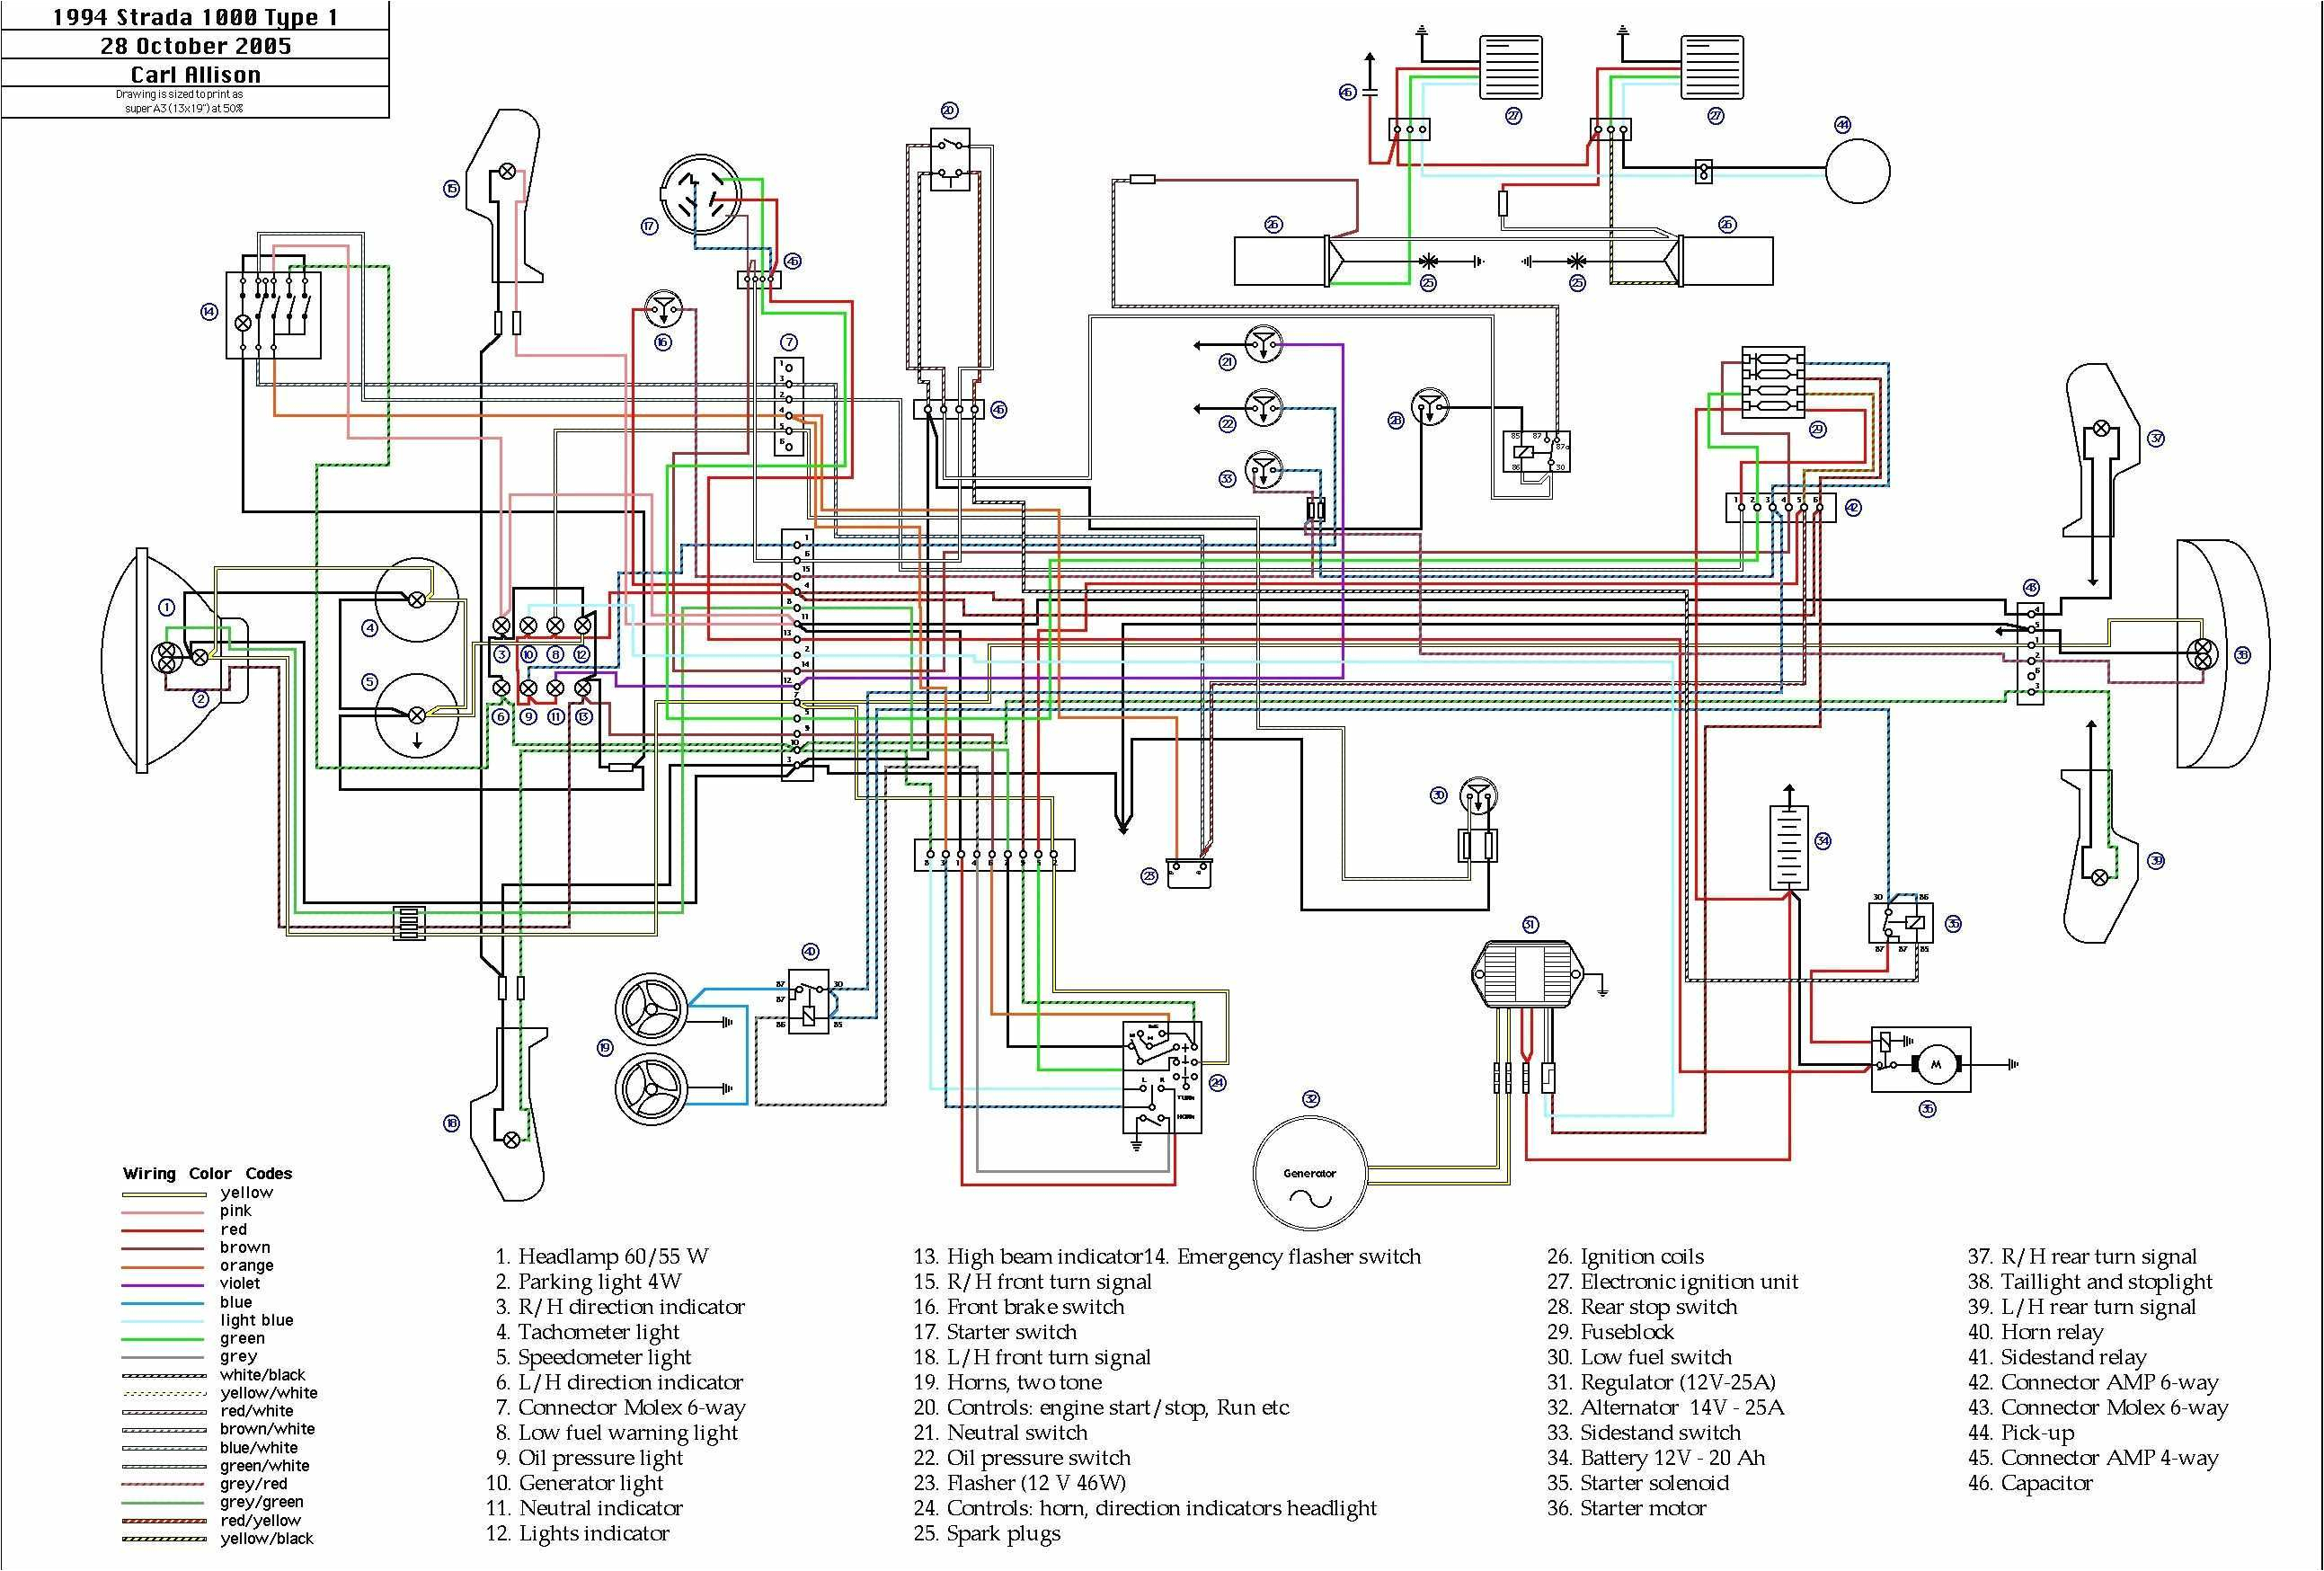 b wiring schematics wiring diagram expertb wiring schematics wiring diagram datasource b wiring schematic electrical wiring